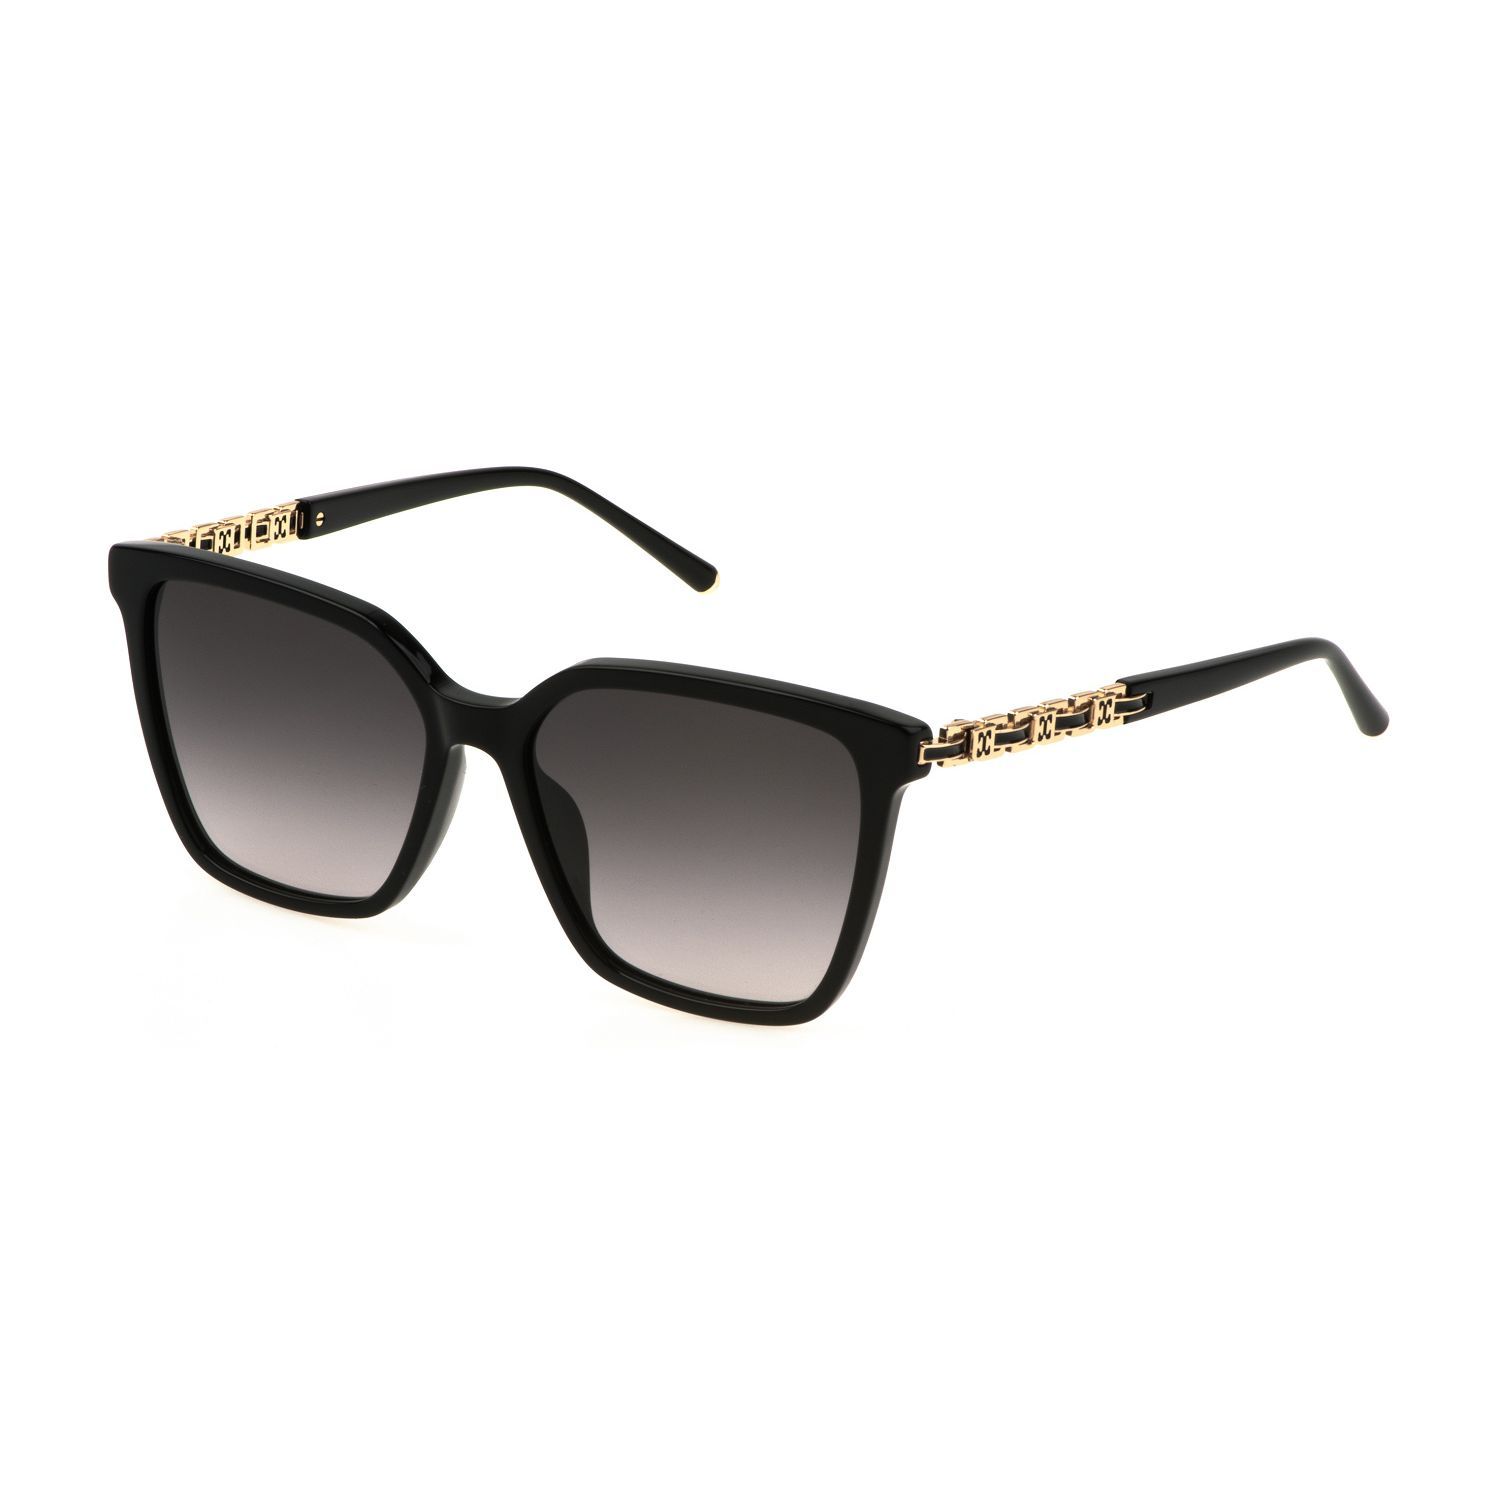 SESD96 Square Sunglasses 0700 - size 54